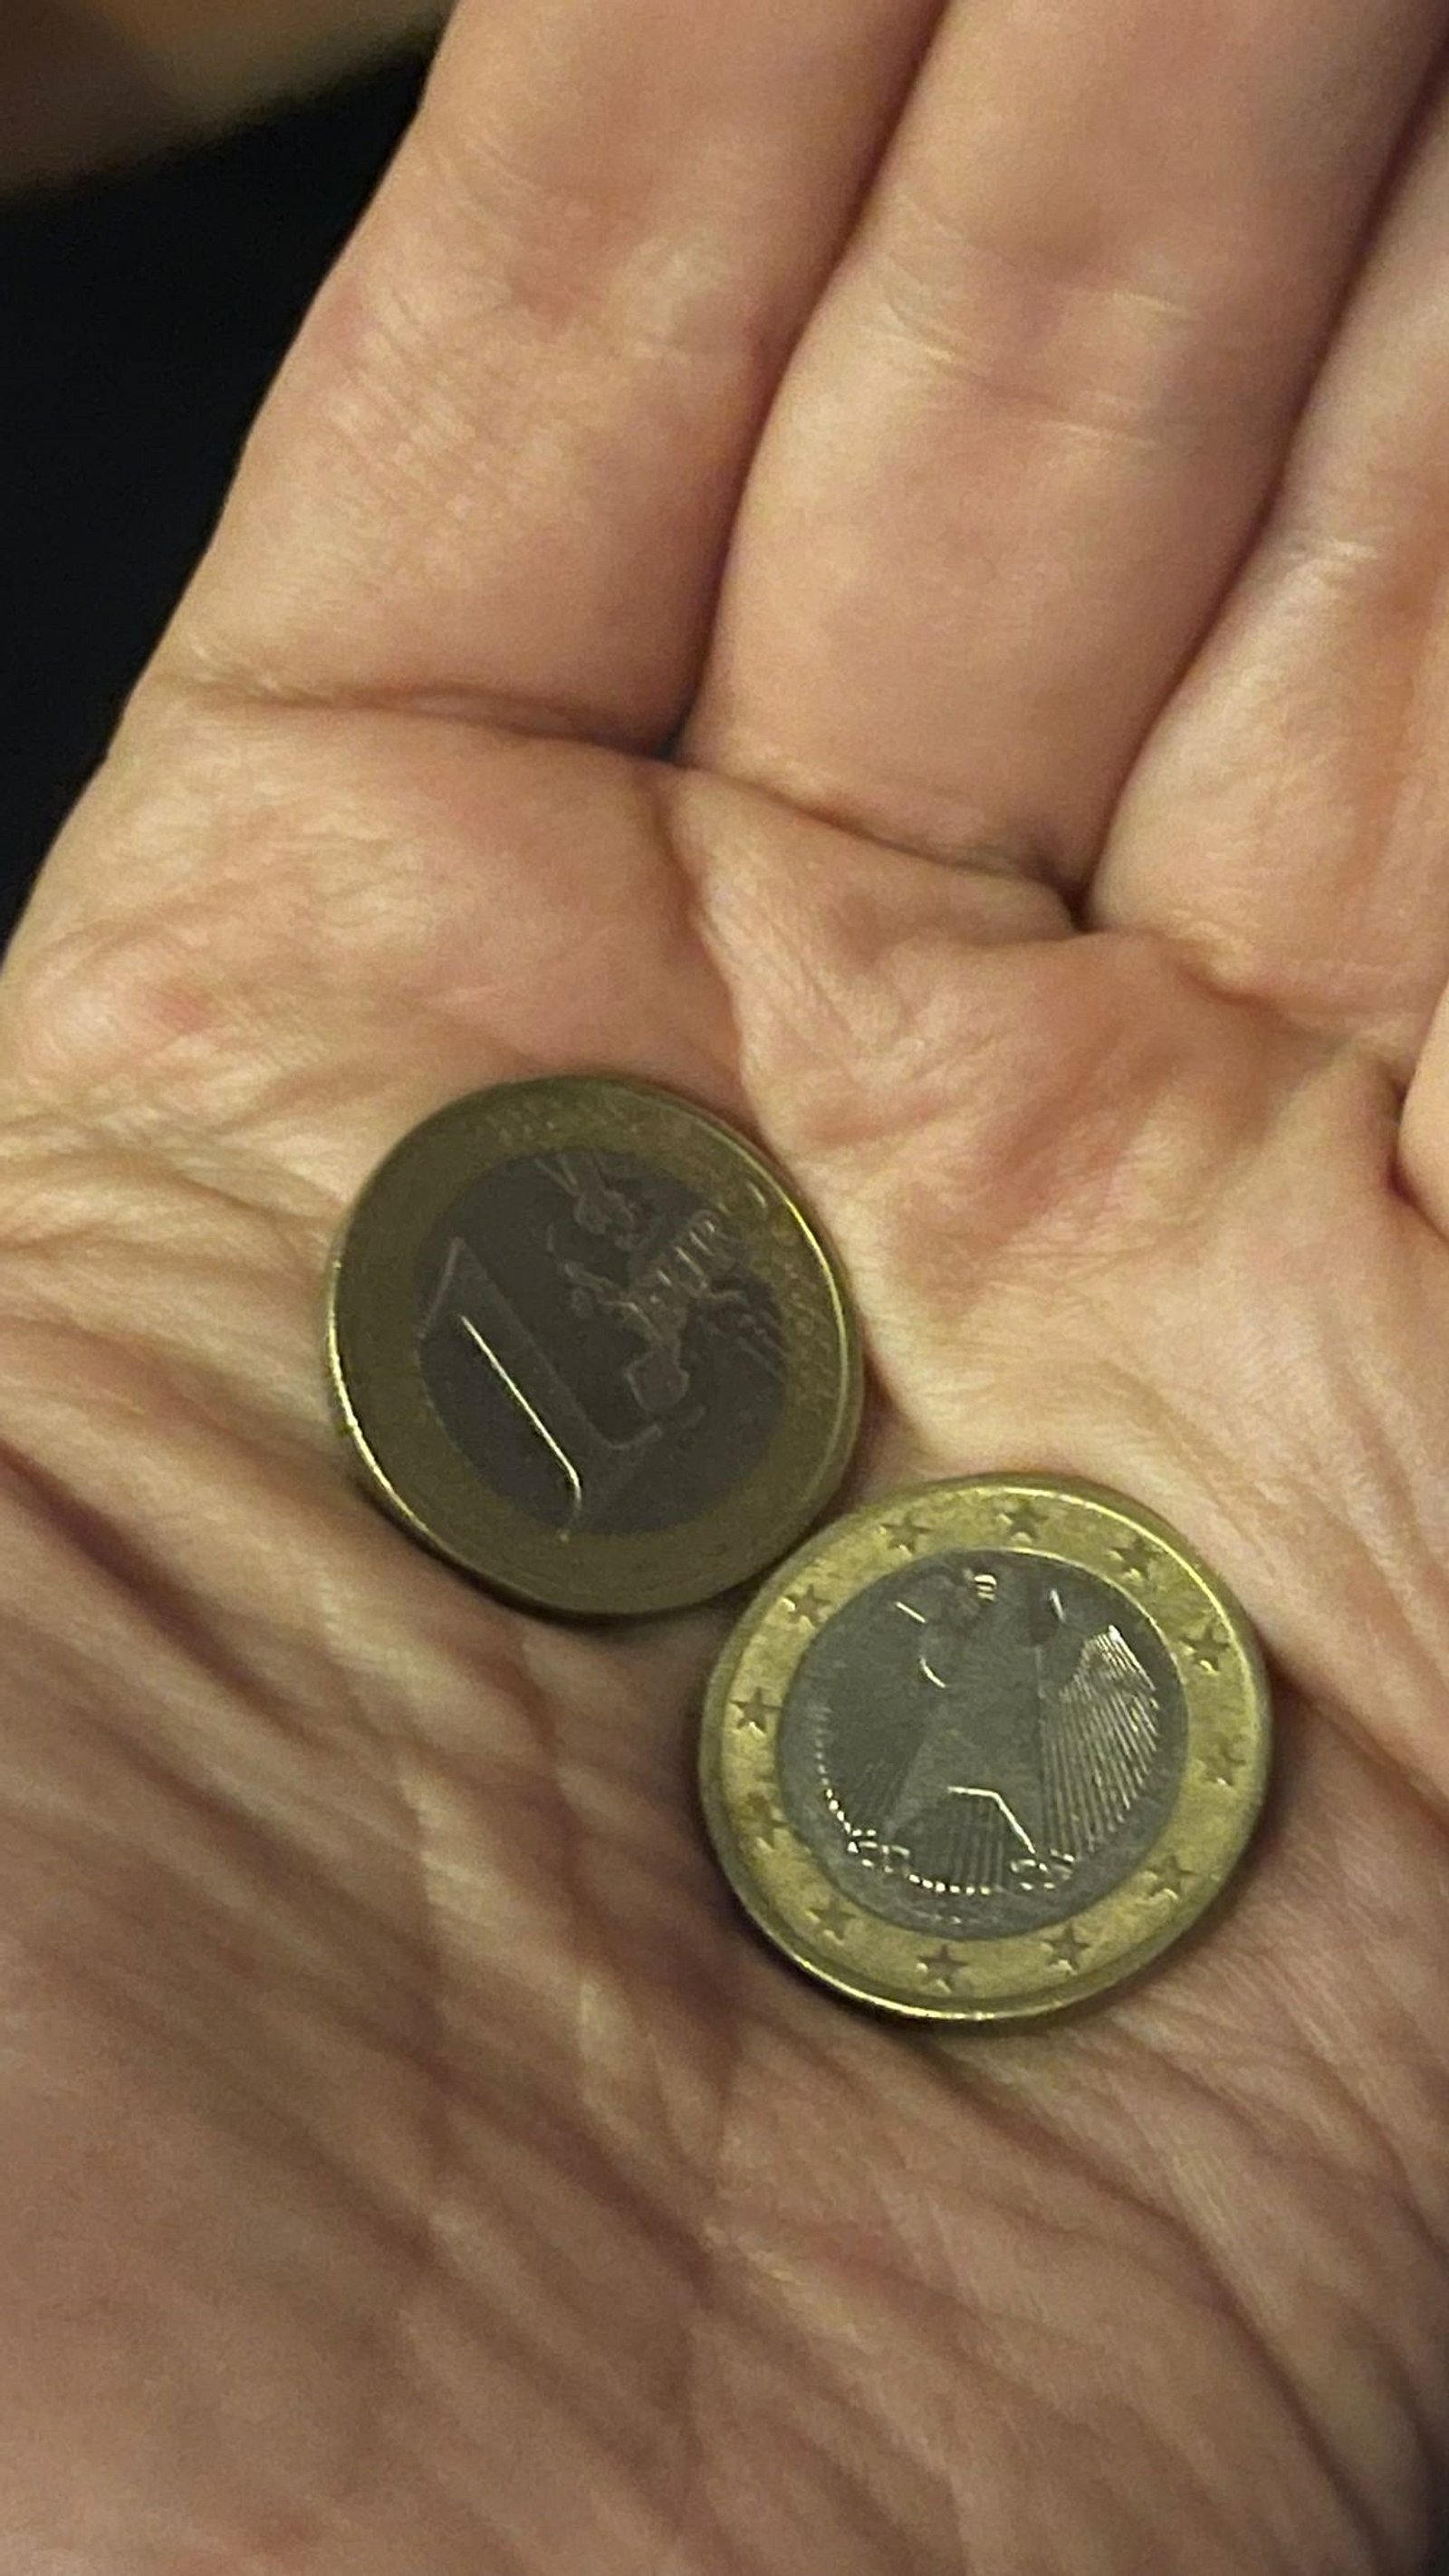 Zahlungsmittel: So sehen die 1-Euro-Münzen aus - Bilder & Fotos - WELT